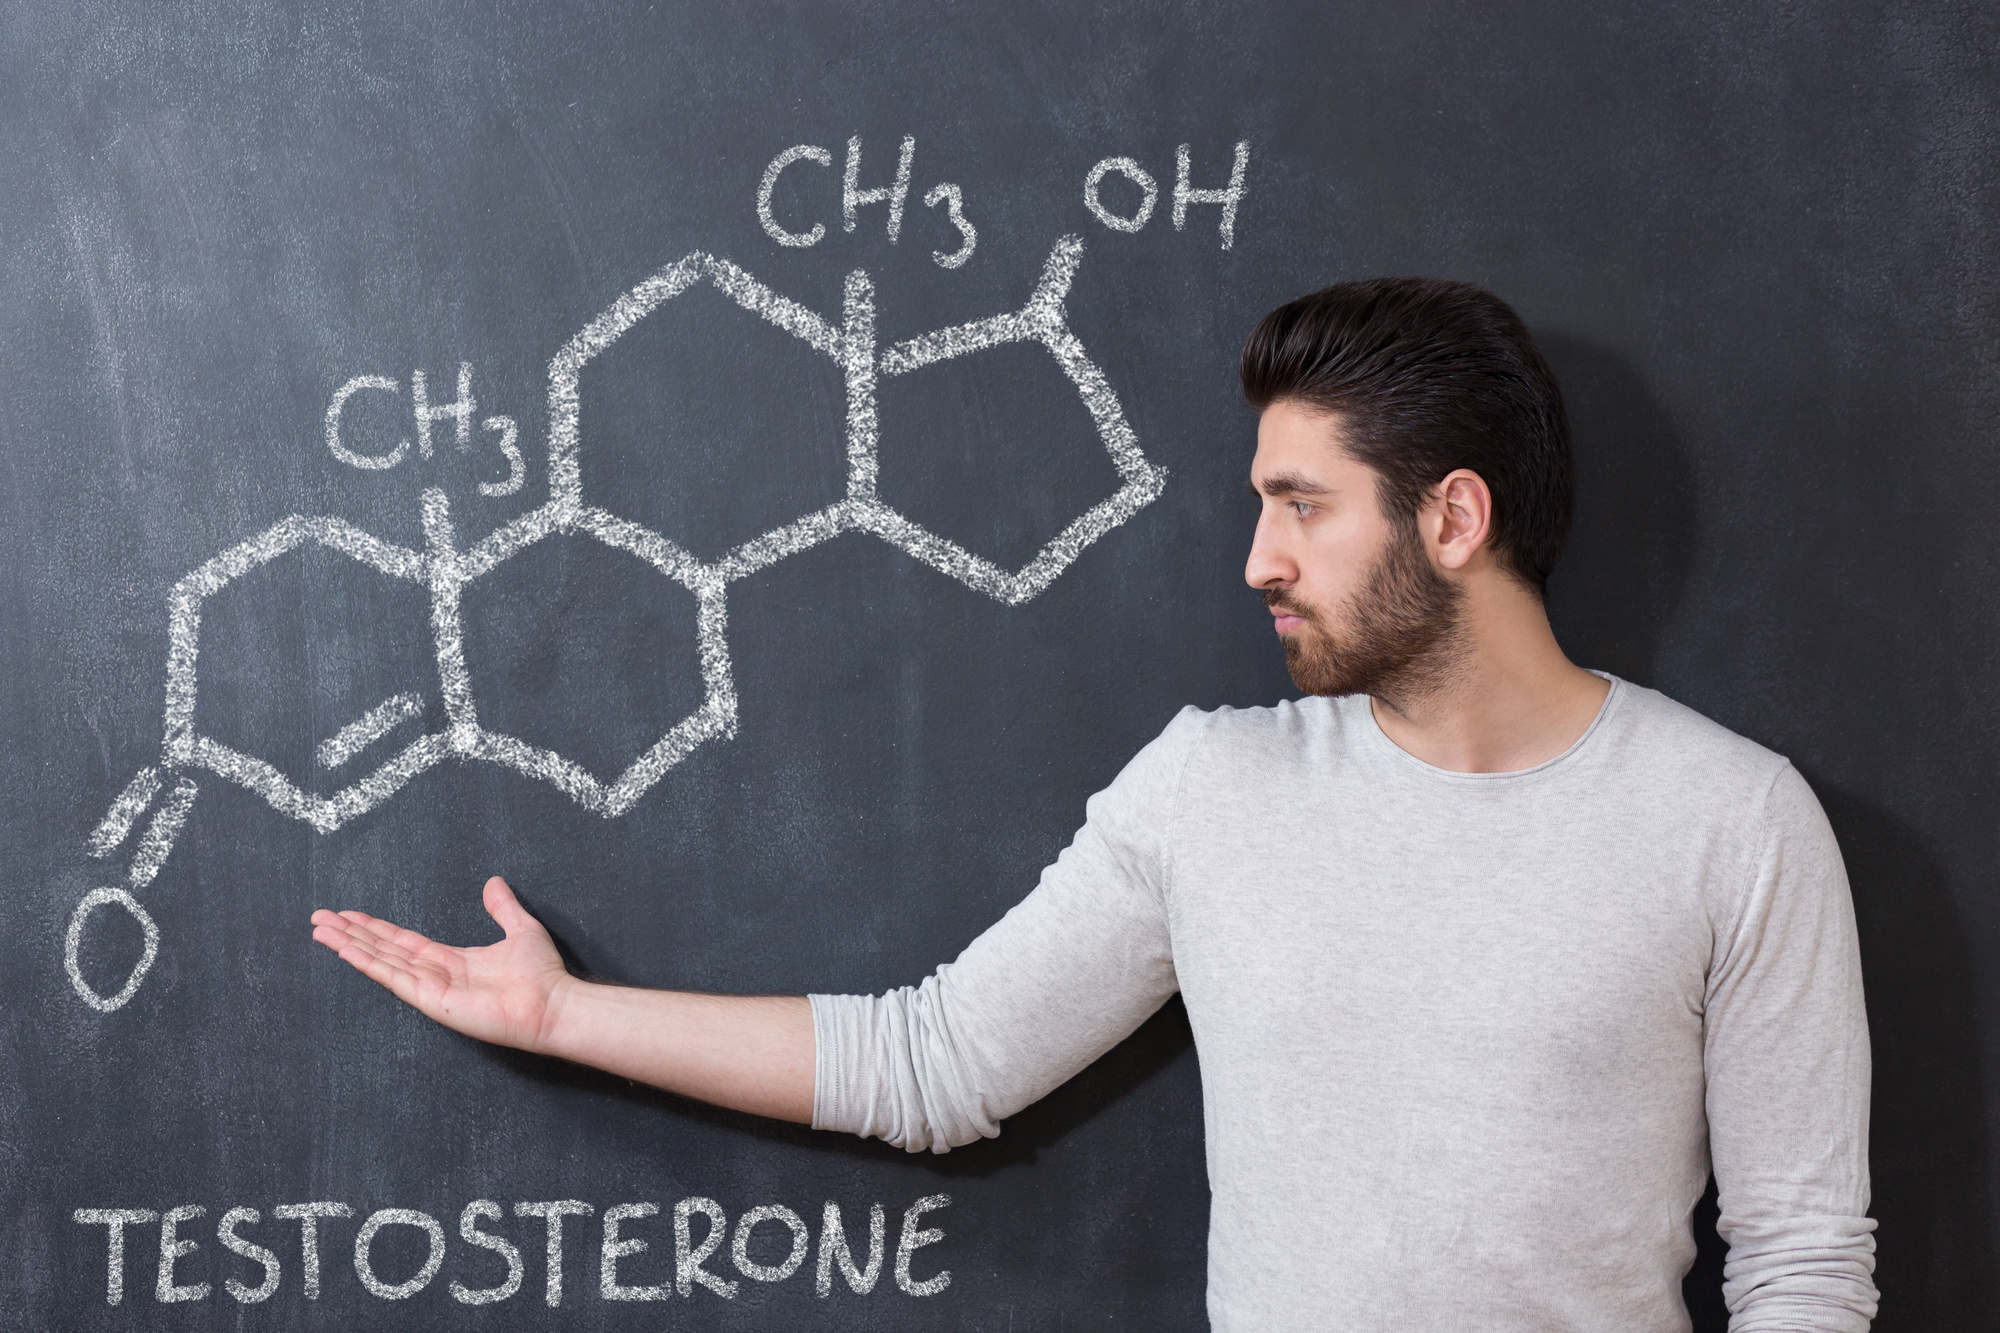 حبوب هرمون التستوستيرون: افضل محفزات التستوستيرون مع تقييمات المتخصصين